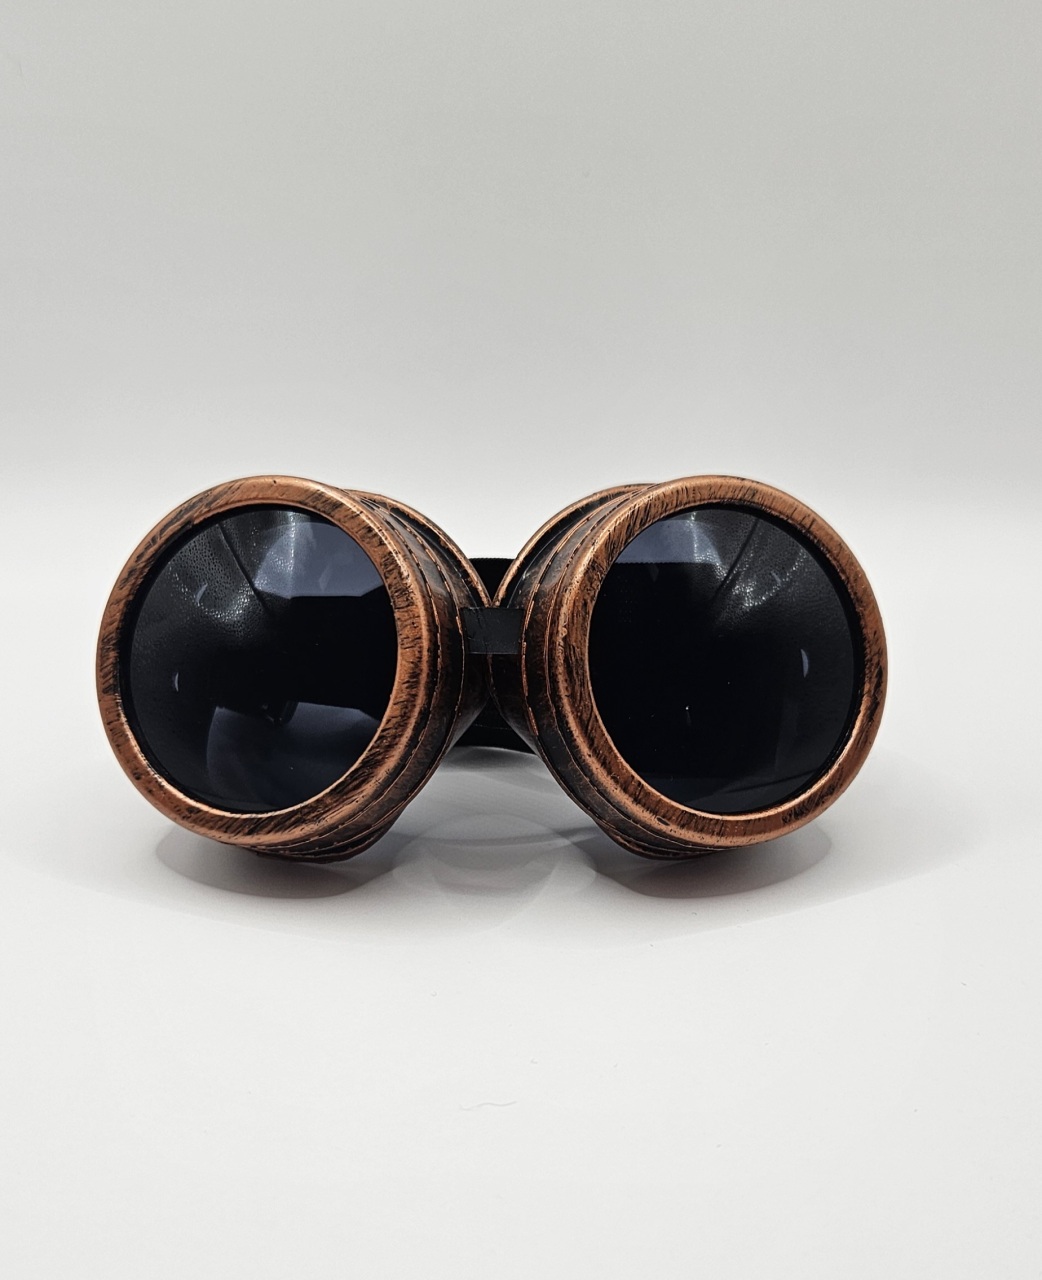 Authentieke steampunk goggles in brons voor een vintage look